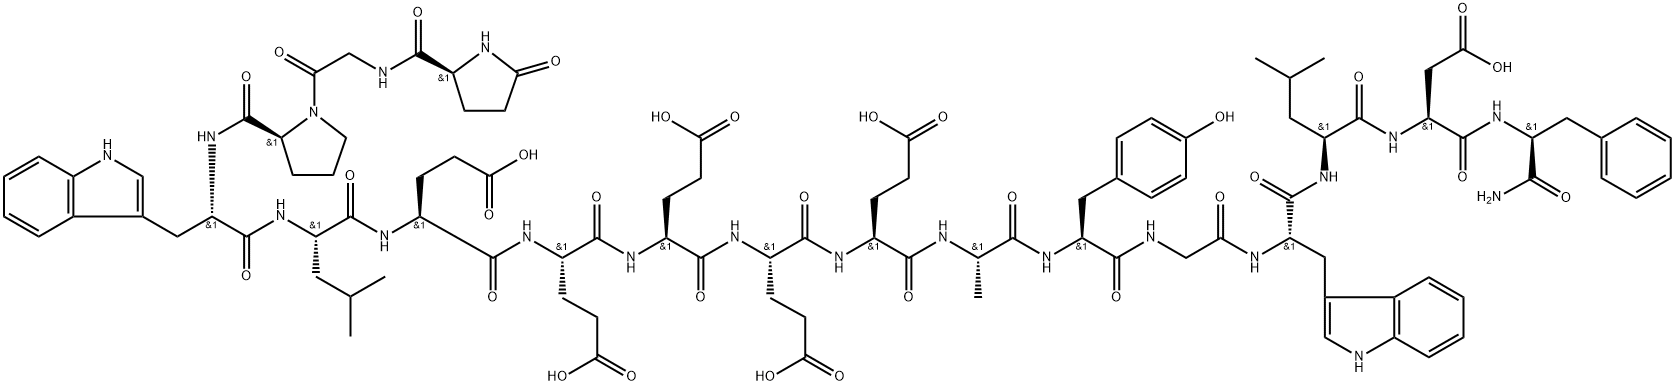 5-オキソ-L-Pro-Gly-L-Pro-L-Trp-L-Leu-L-Glu-L-Glu-L-Glu-L-Glu-L-Glu-L-Ala-L-Tyr-Gly-L-Trp-L-Leu-L-Asp-L-Phe-NH2 化学構造式